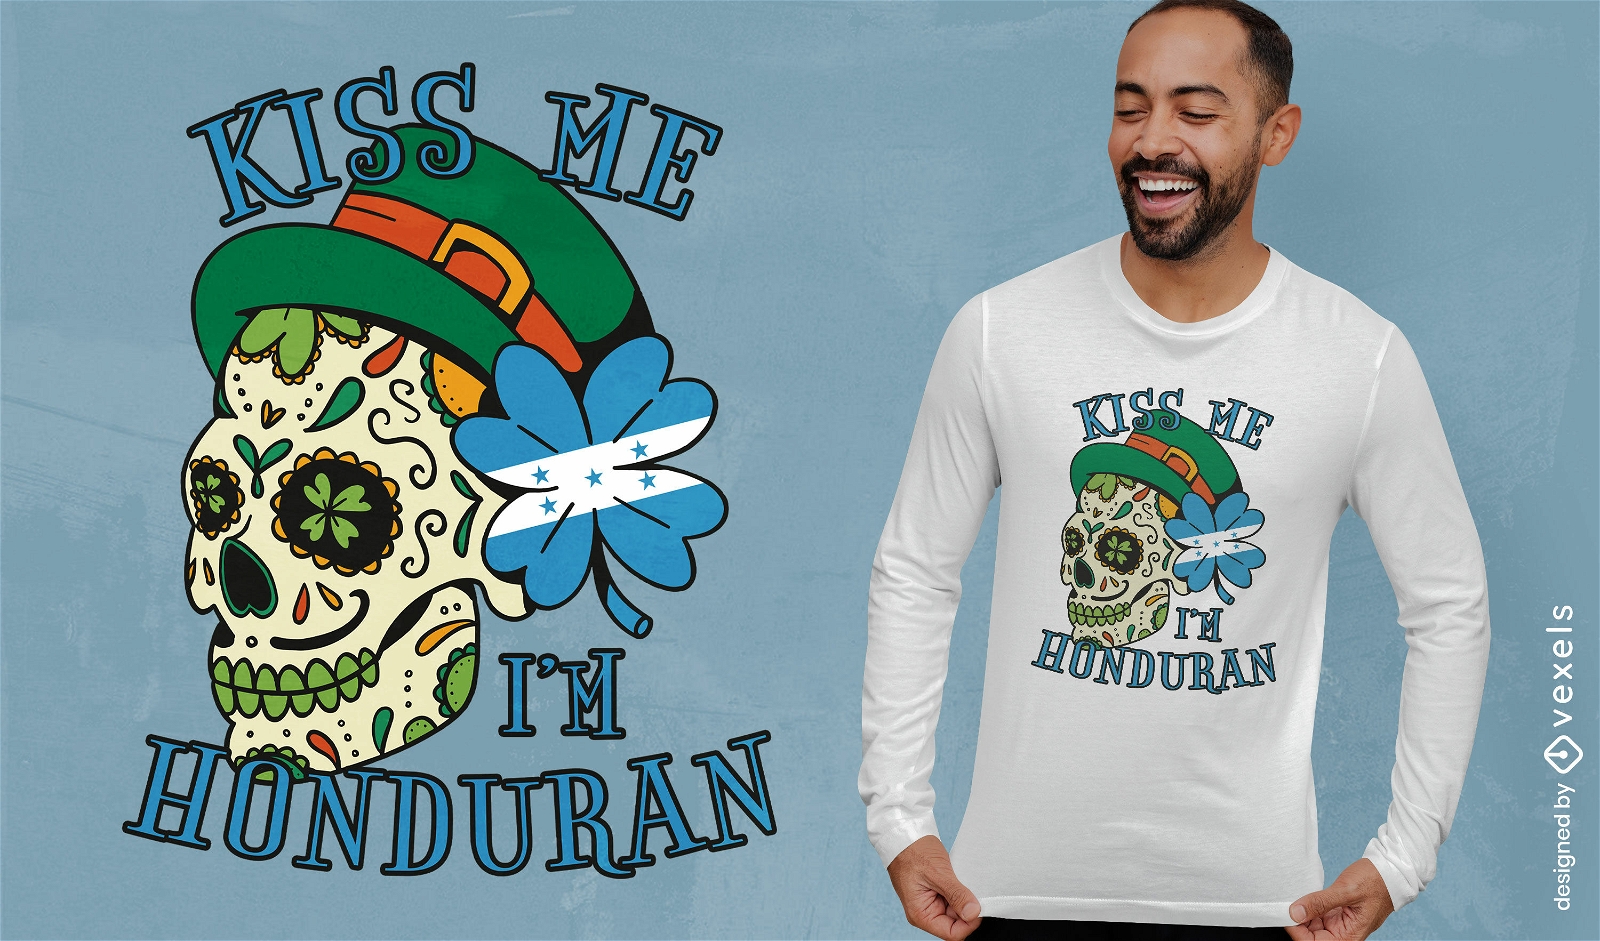 K?ss mich, ich bin ein honduranisches T-Shirt-Design